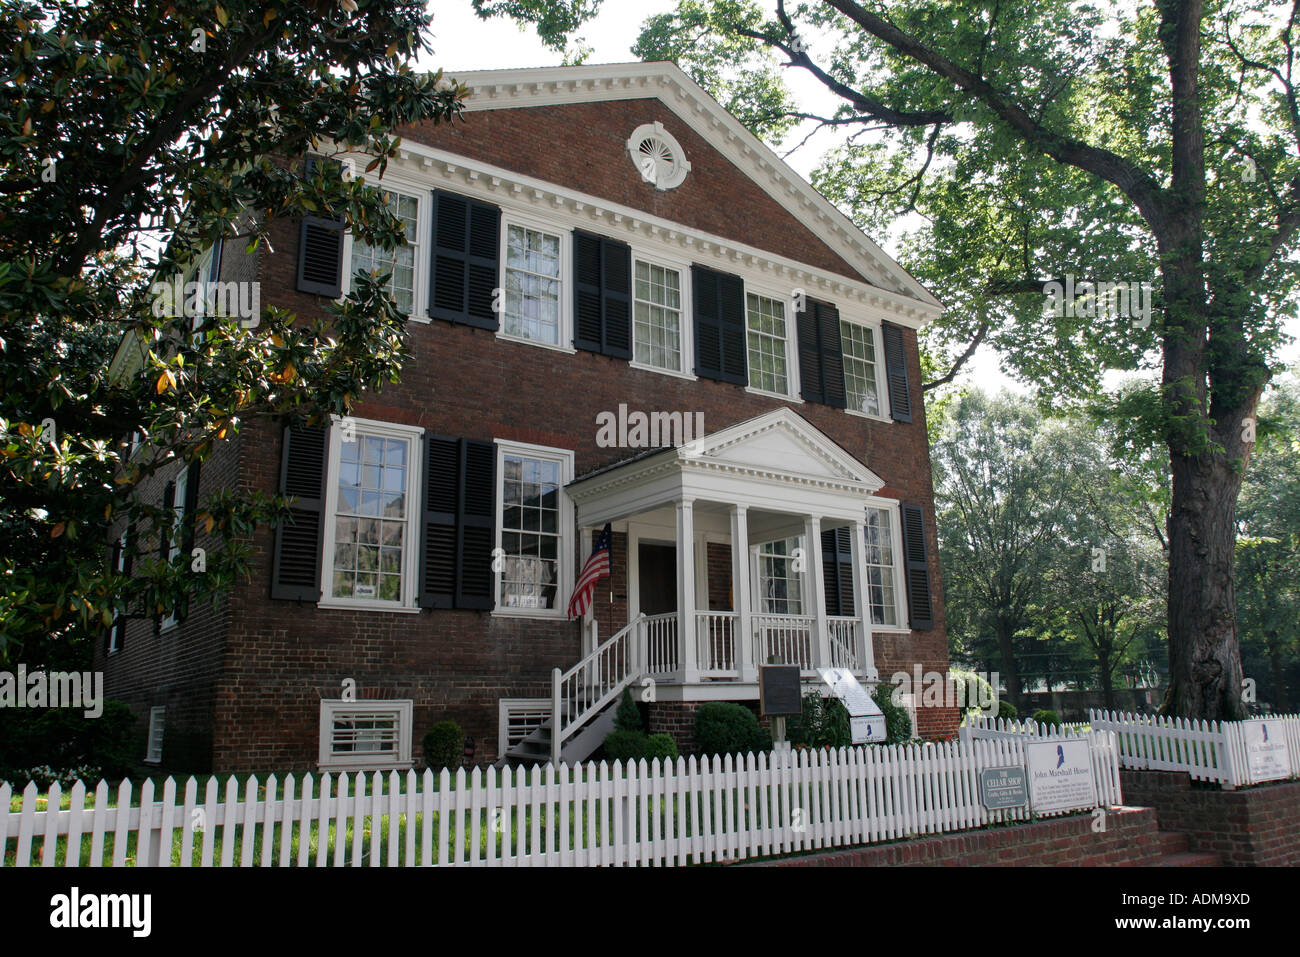 Richmond Virginia, John Marshall casa, case, costruito, costruito 1790, stile federalista, Corte Suprema capo Giustizia, VA060518026 Foto Stock